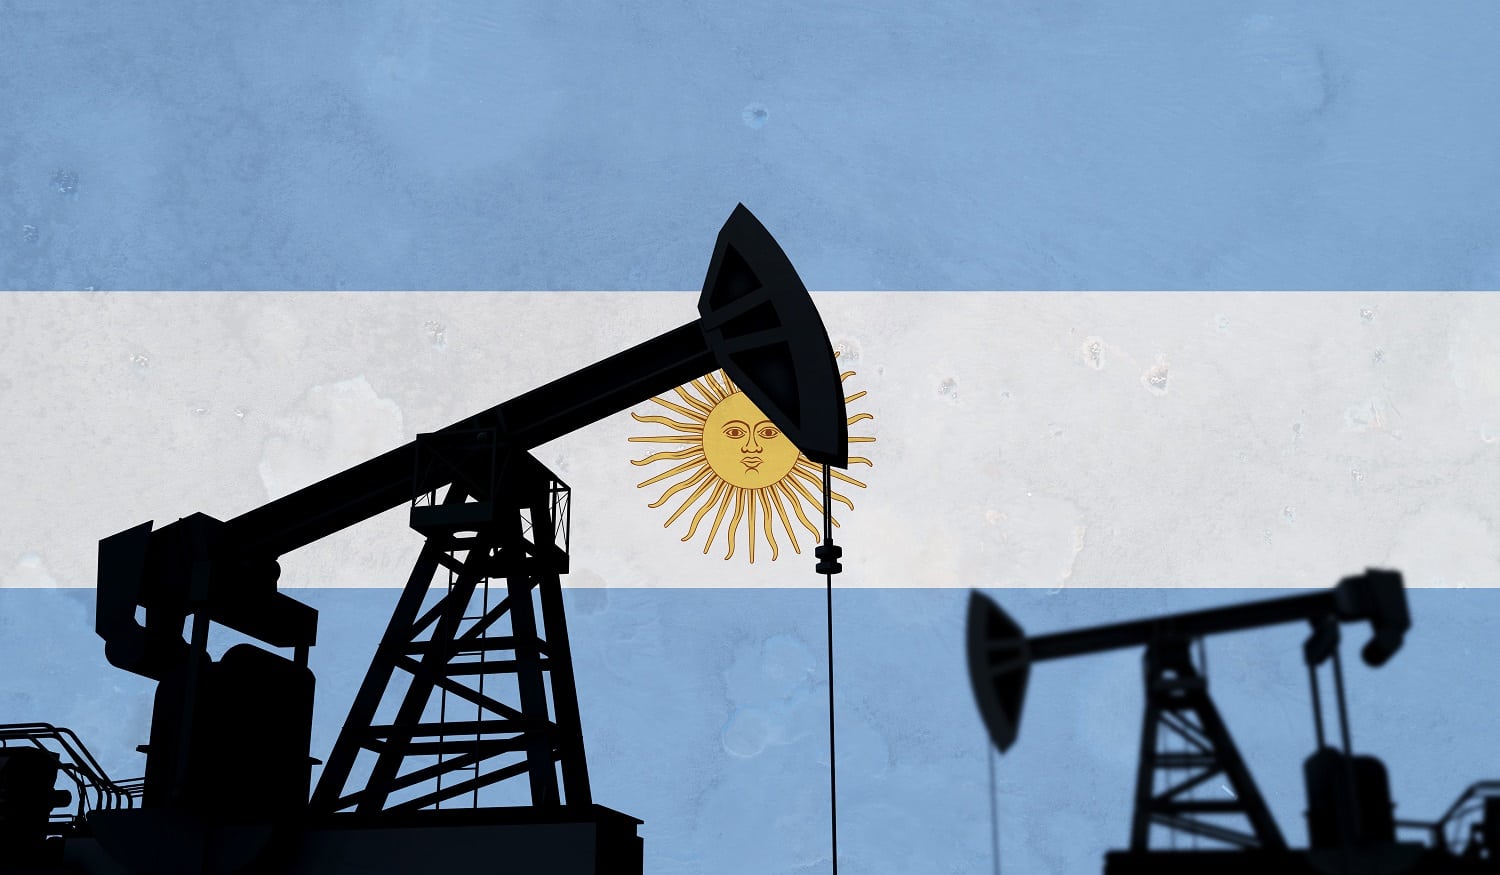 شركة نفط أرجنتينية تسعى لاستخدام الغاز المصاحب للنفط في تعدين العملات الرقمية